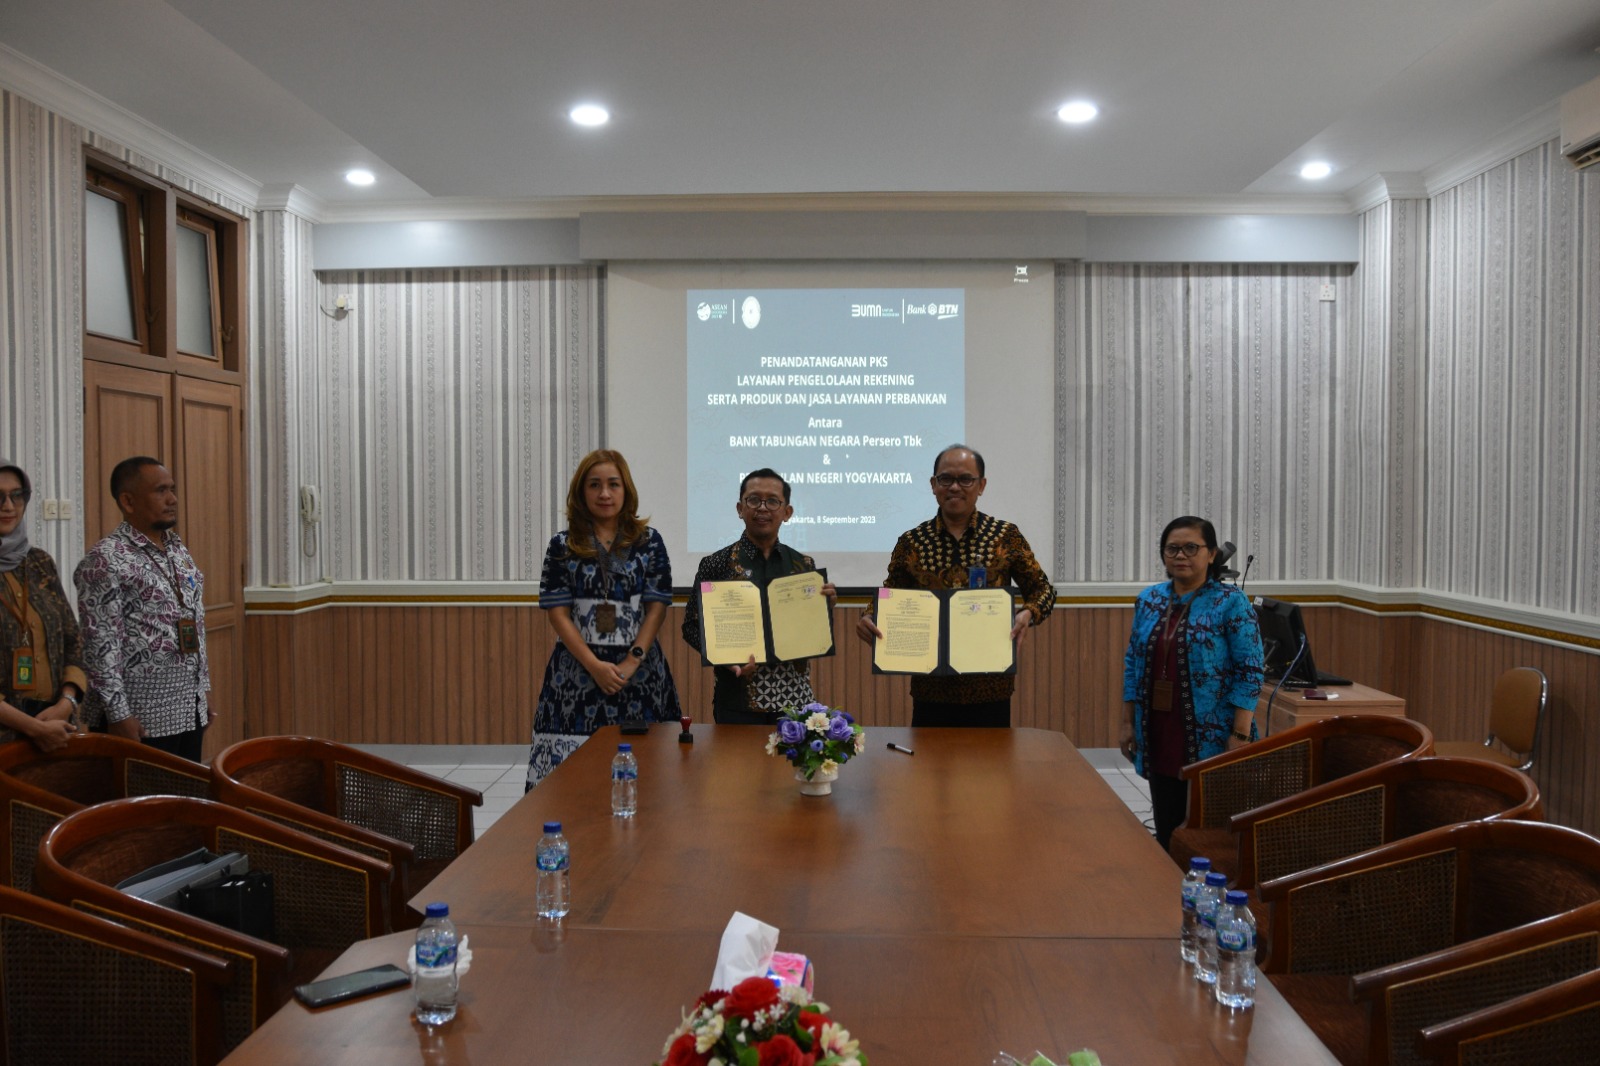 Perjanjian Kerjasama (MoU) antara Pengadilan Negeri Yogyakarta dengan Bank Tabungan Negara (BTN)